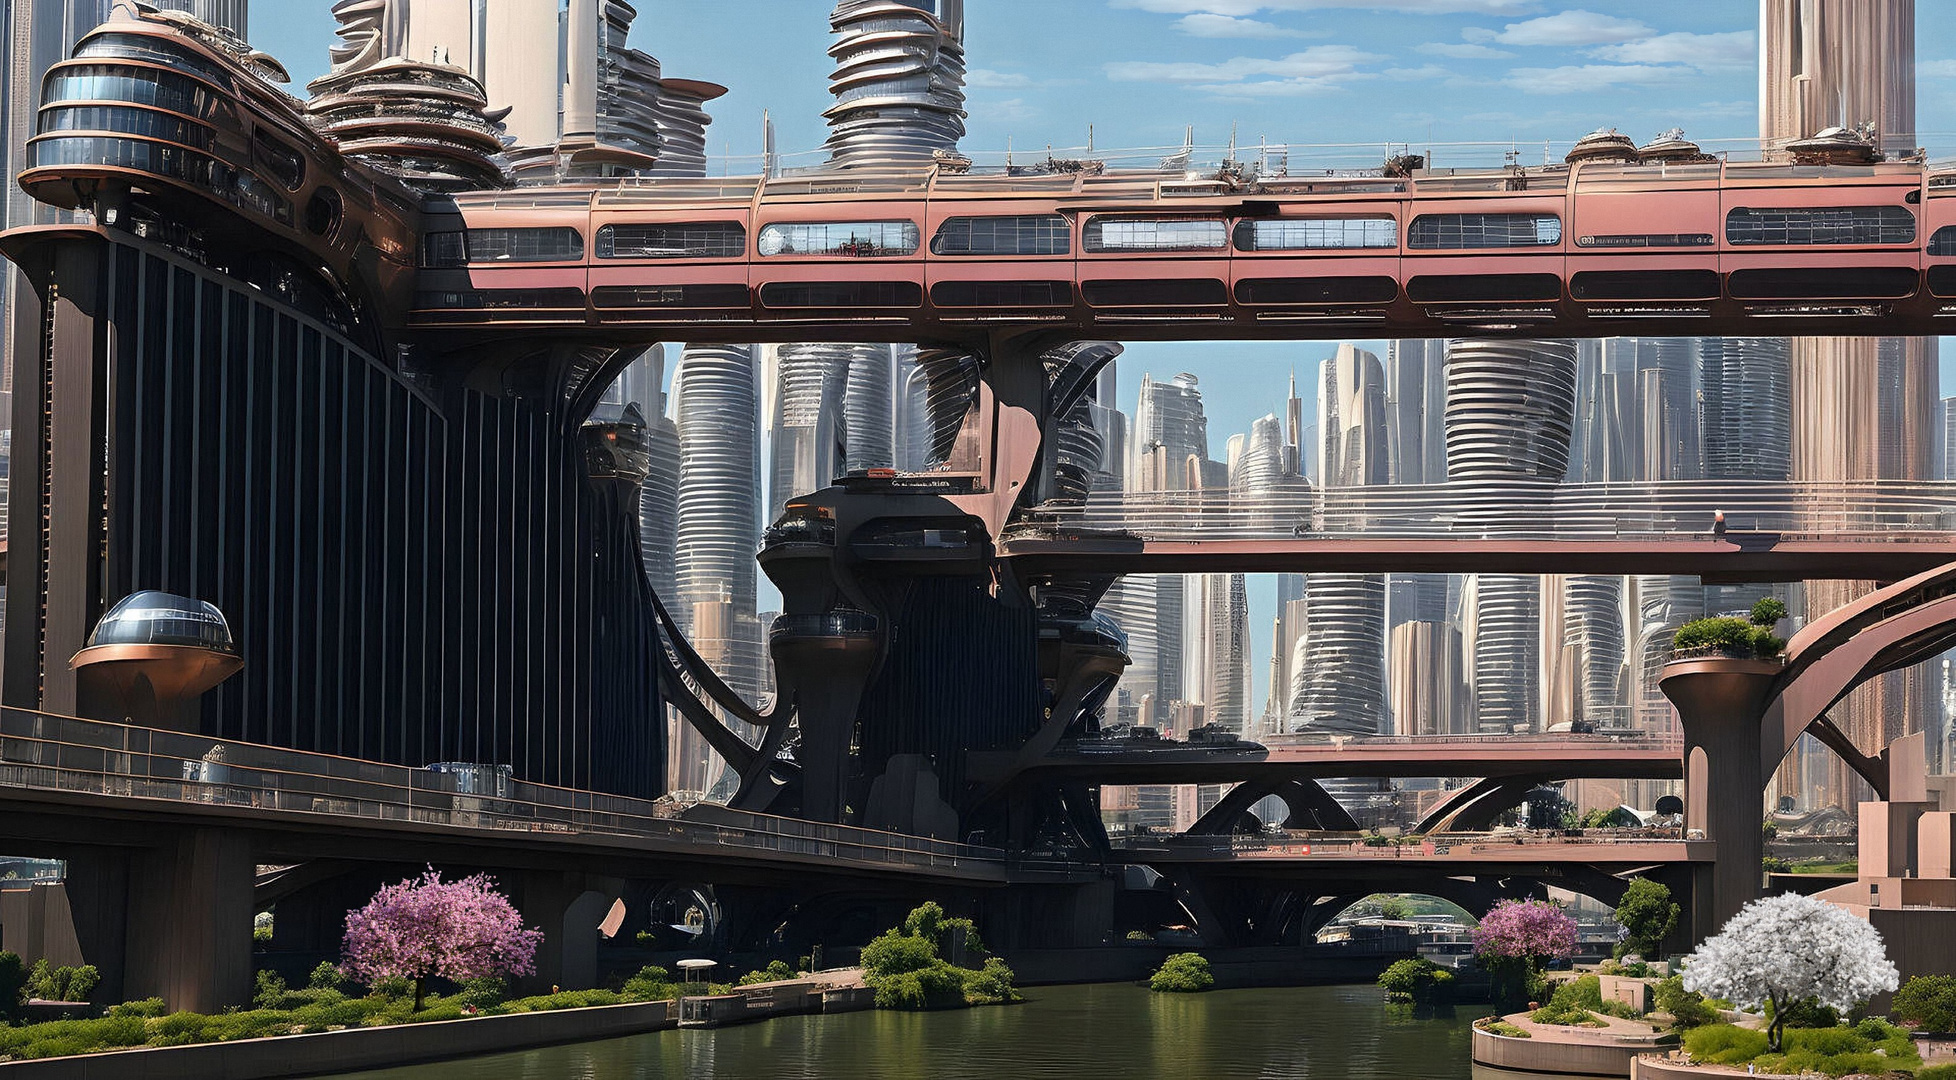 The Bridges of a big City